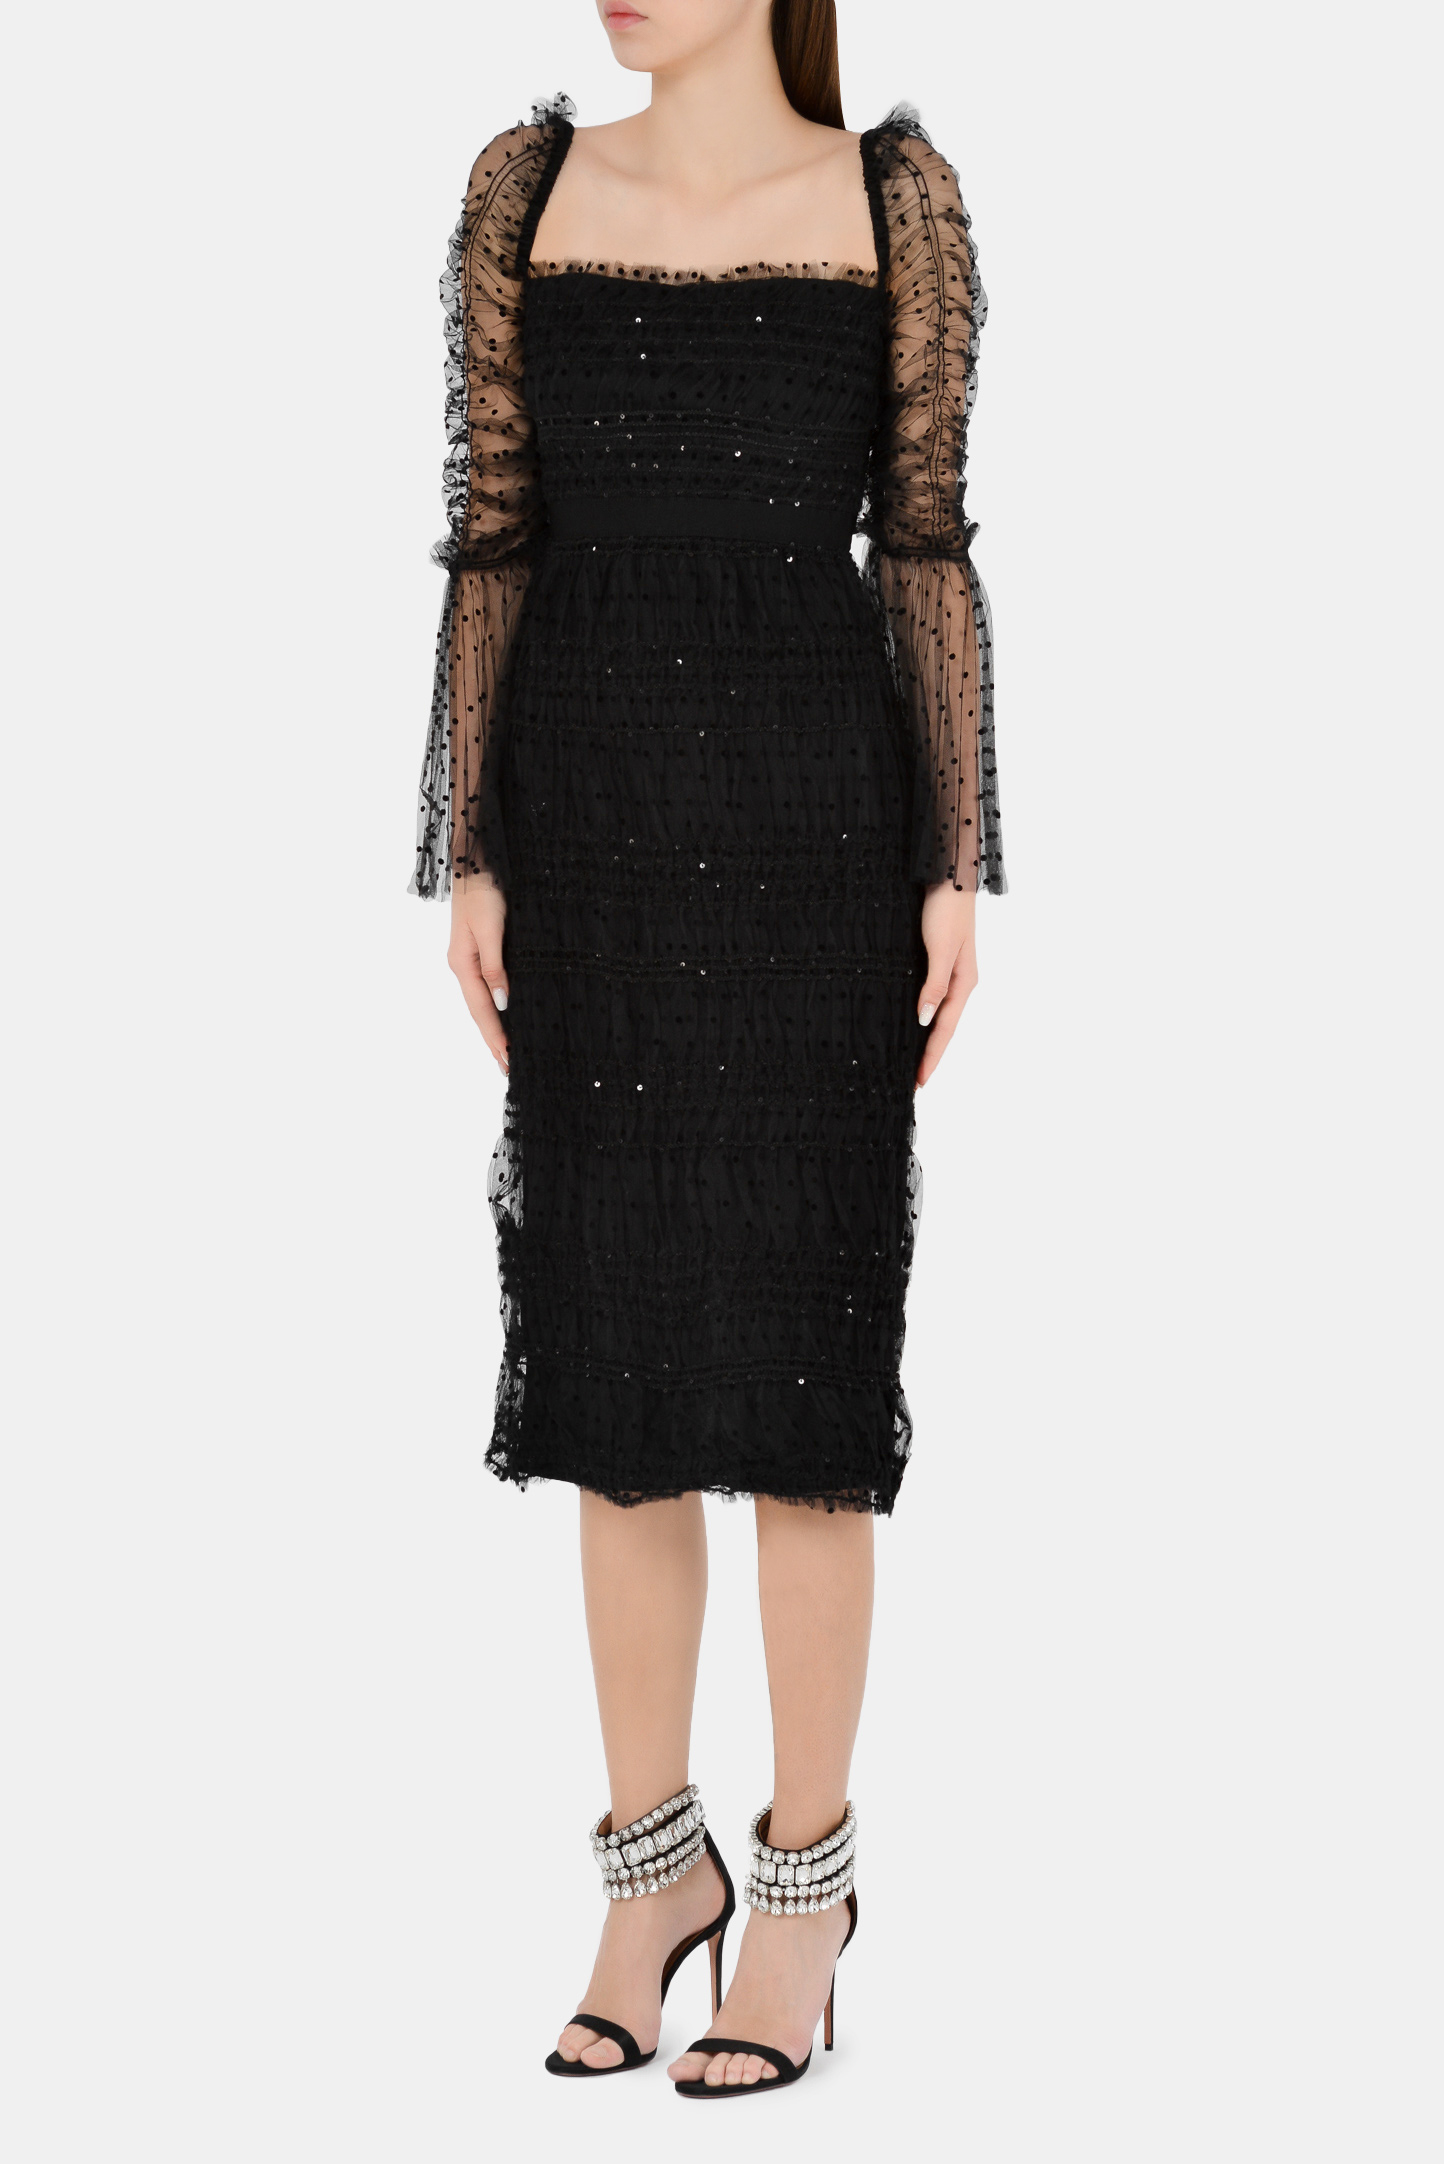 Платье SELF PORTRAIT RS21-137, цвет: Черный, Женский